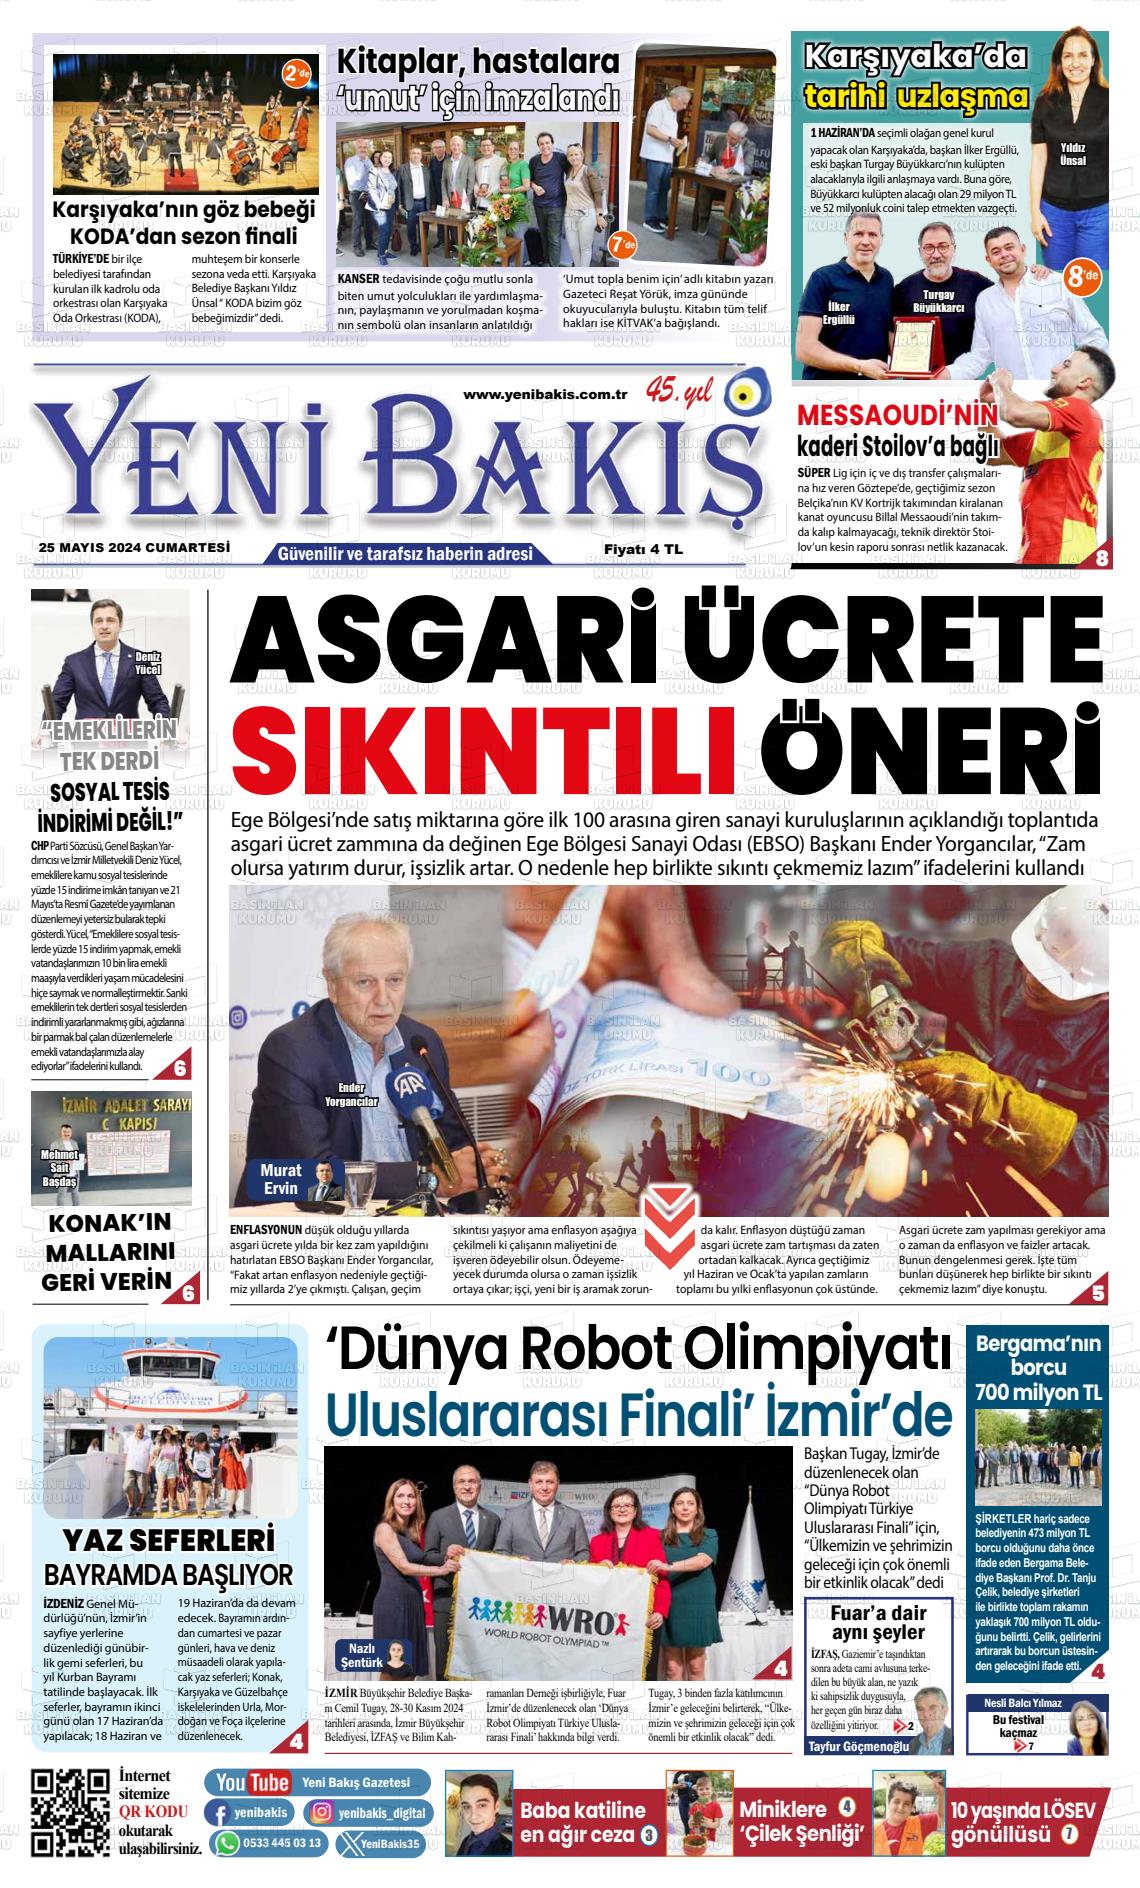 YENİ BAKIŞ Gazetesi